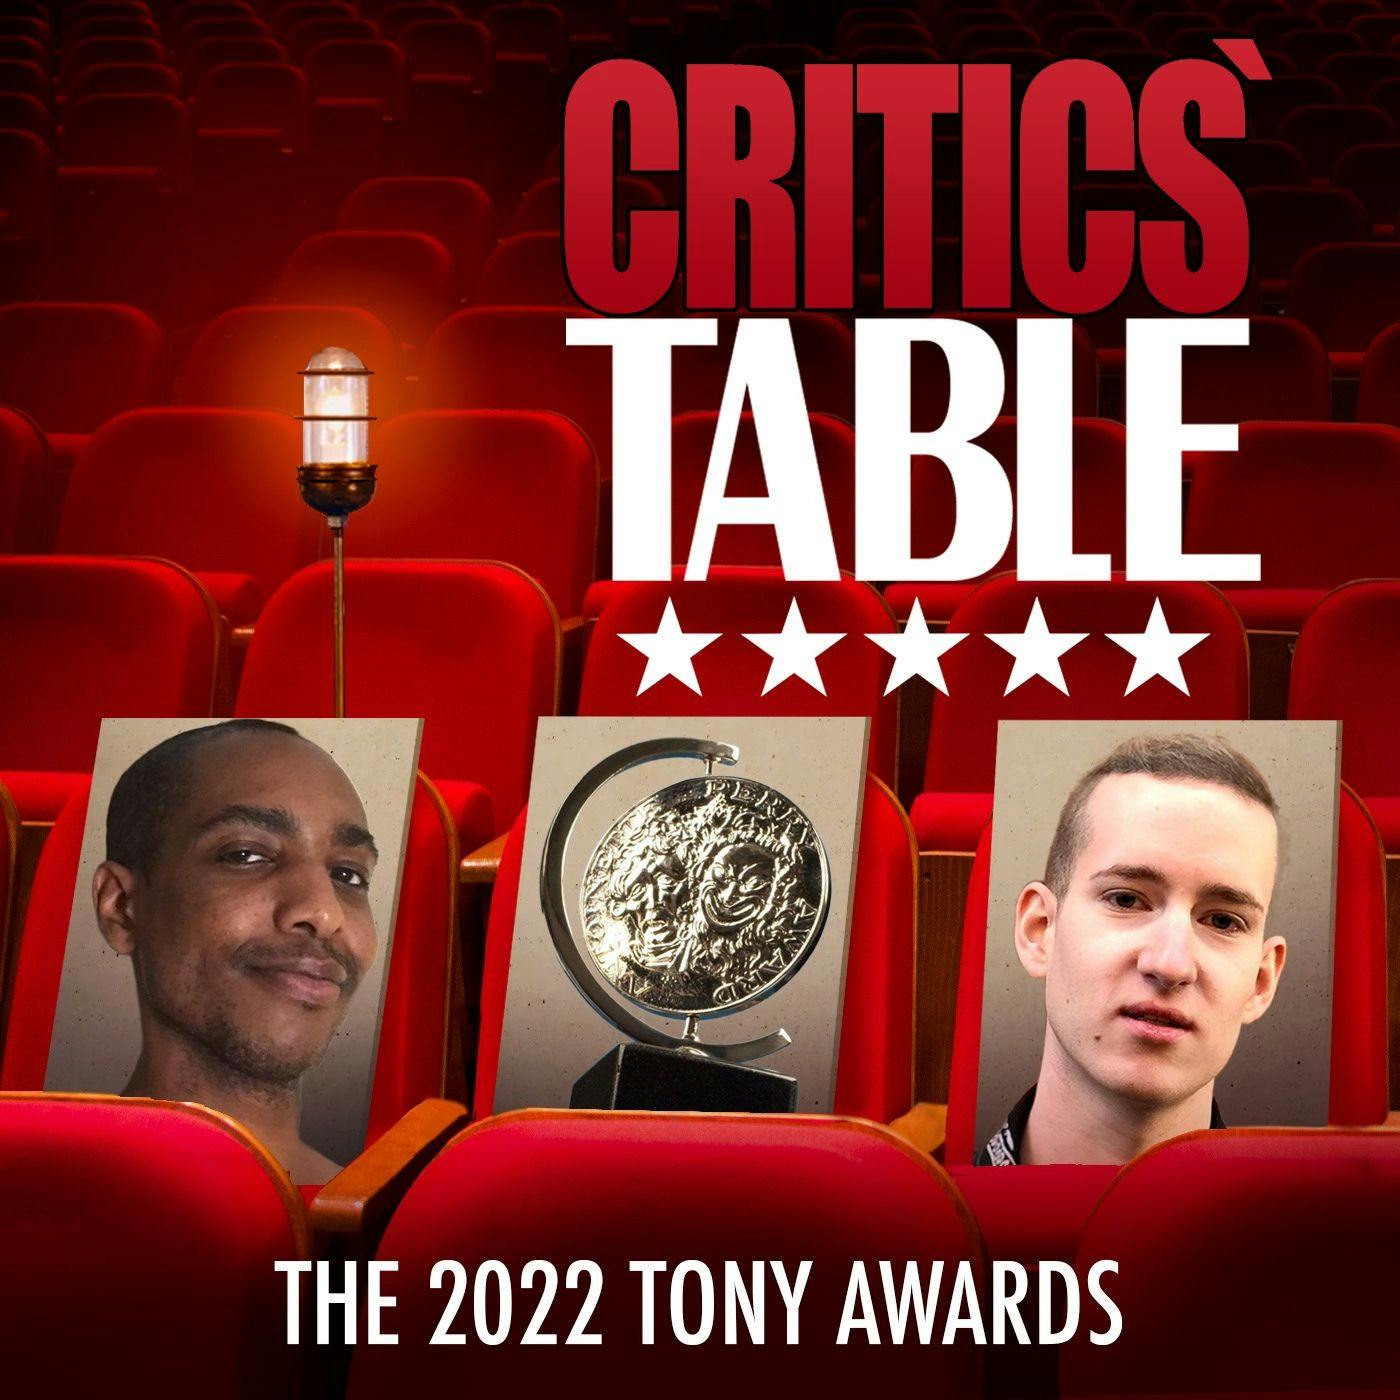 The 2022 TONY Awards